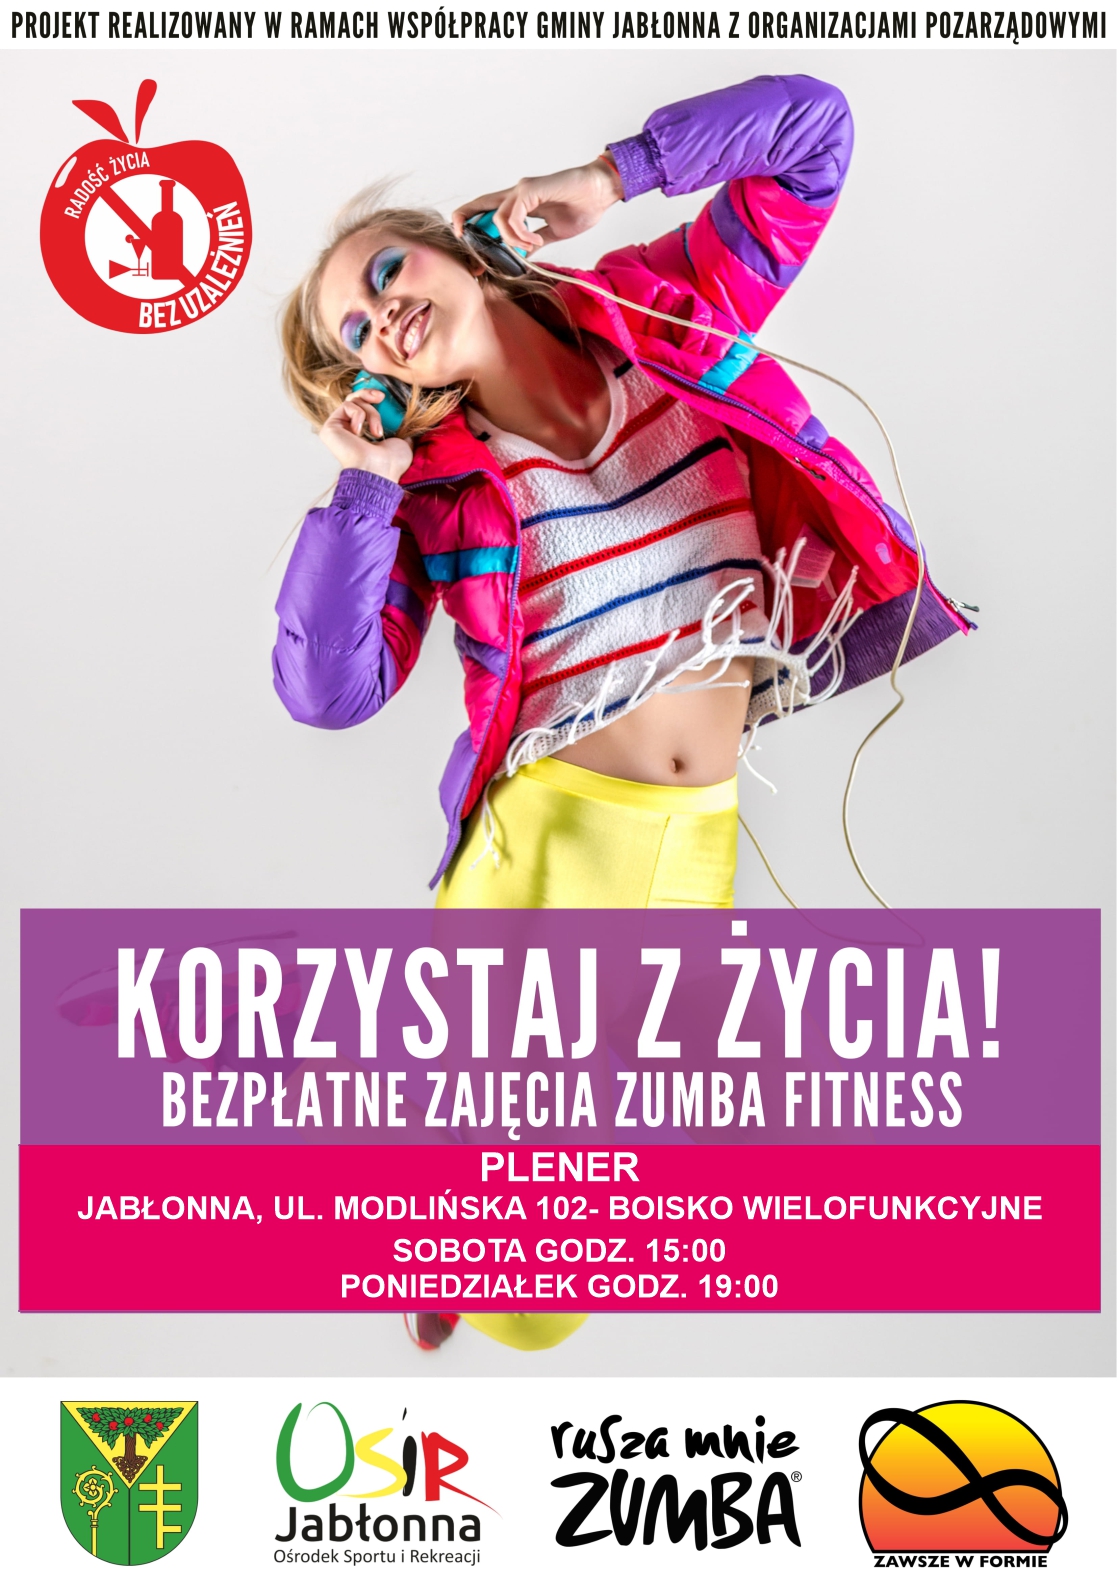 Plakat informacyjny o zajęciach Zumba Fitness na zdjęciu kobieta ze słuchawkami na uszach i kolorowym stroju